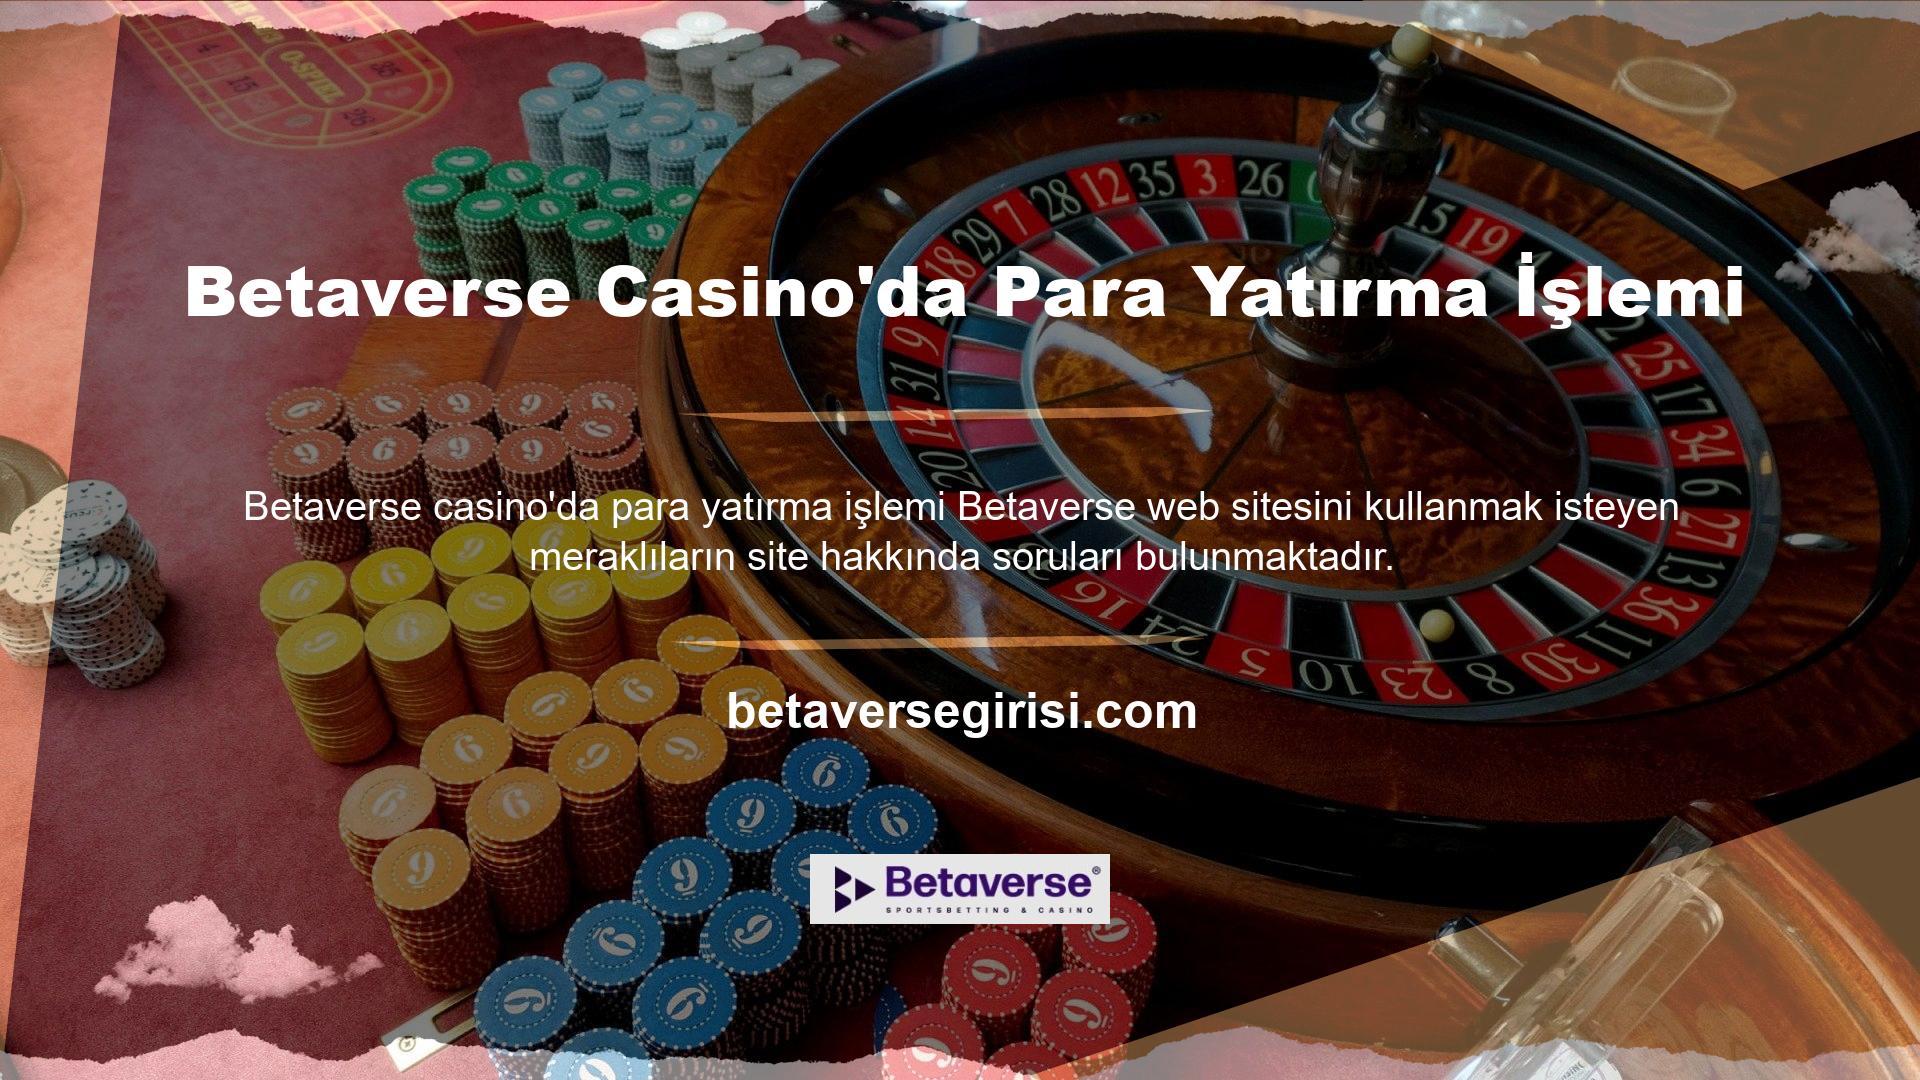 Bu soruların ilki Betaverse casino web sitesinin para yatırma teknolojisi hakkında bilgi edinmek istiyorlar